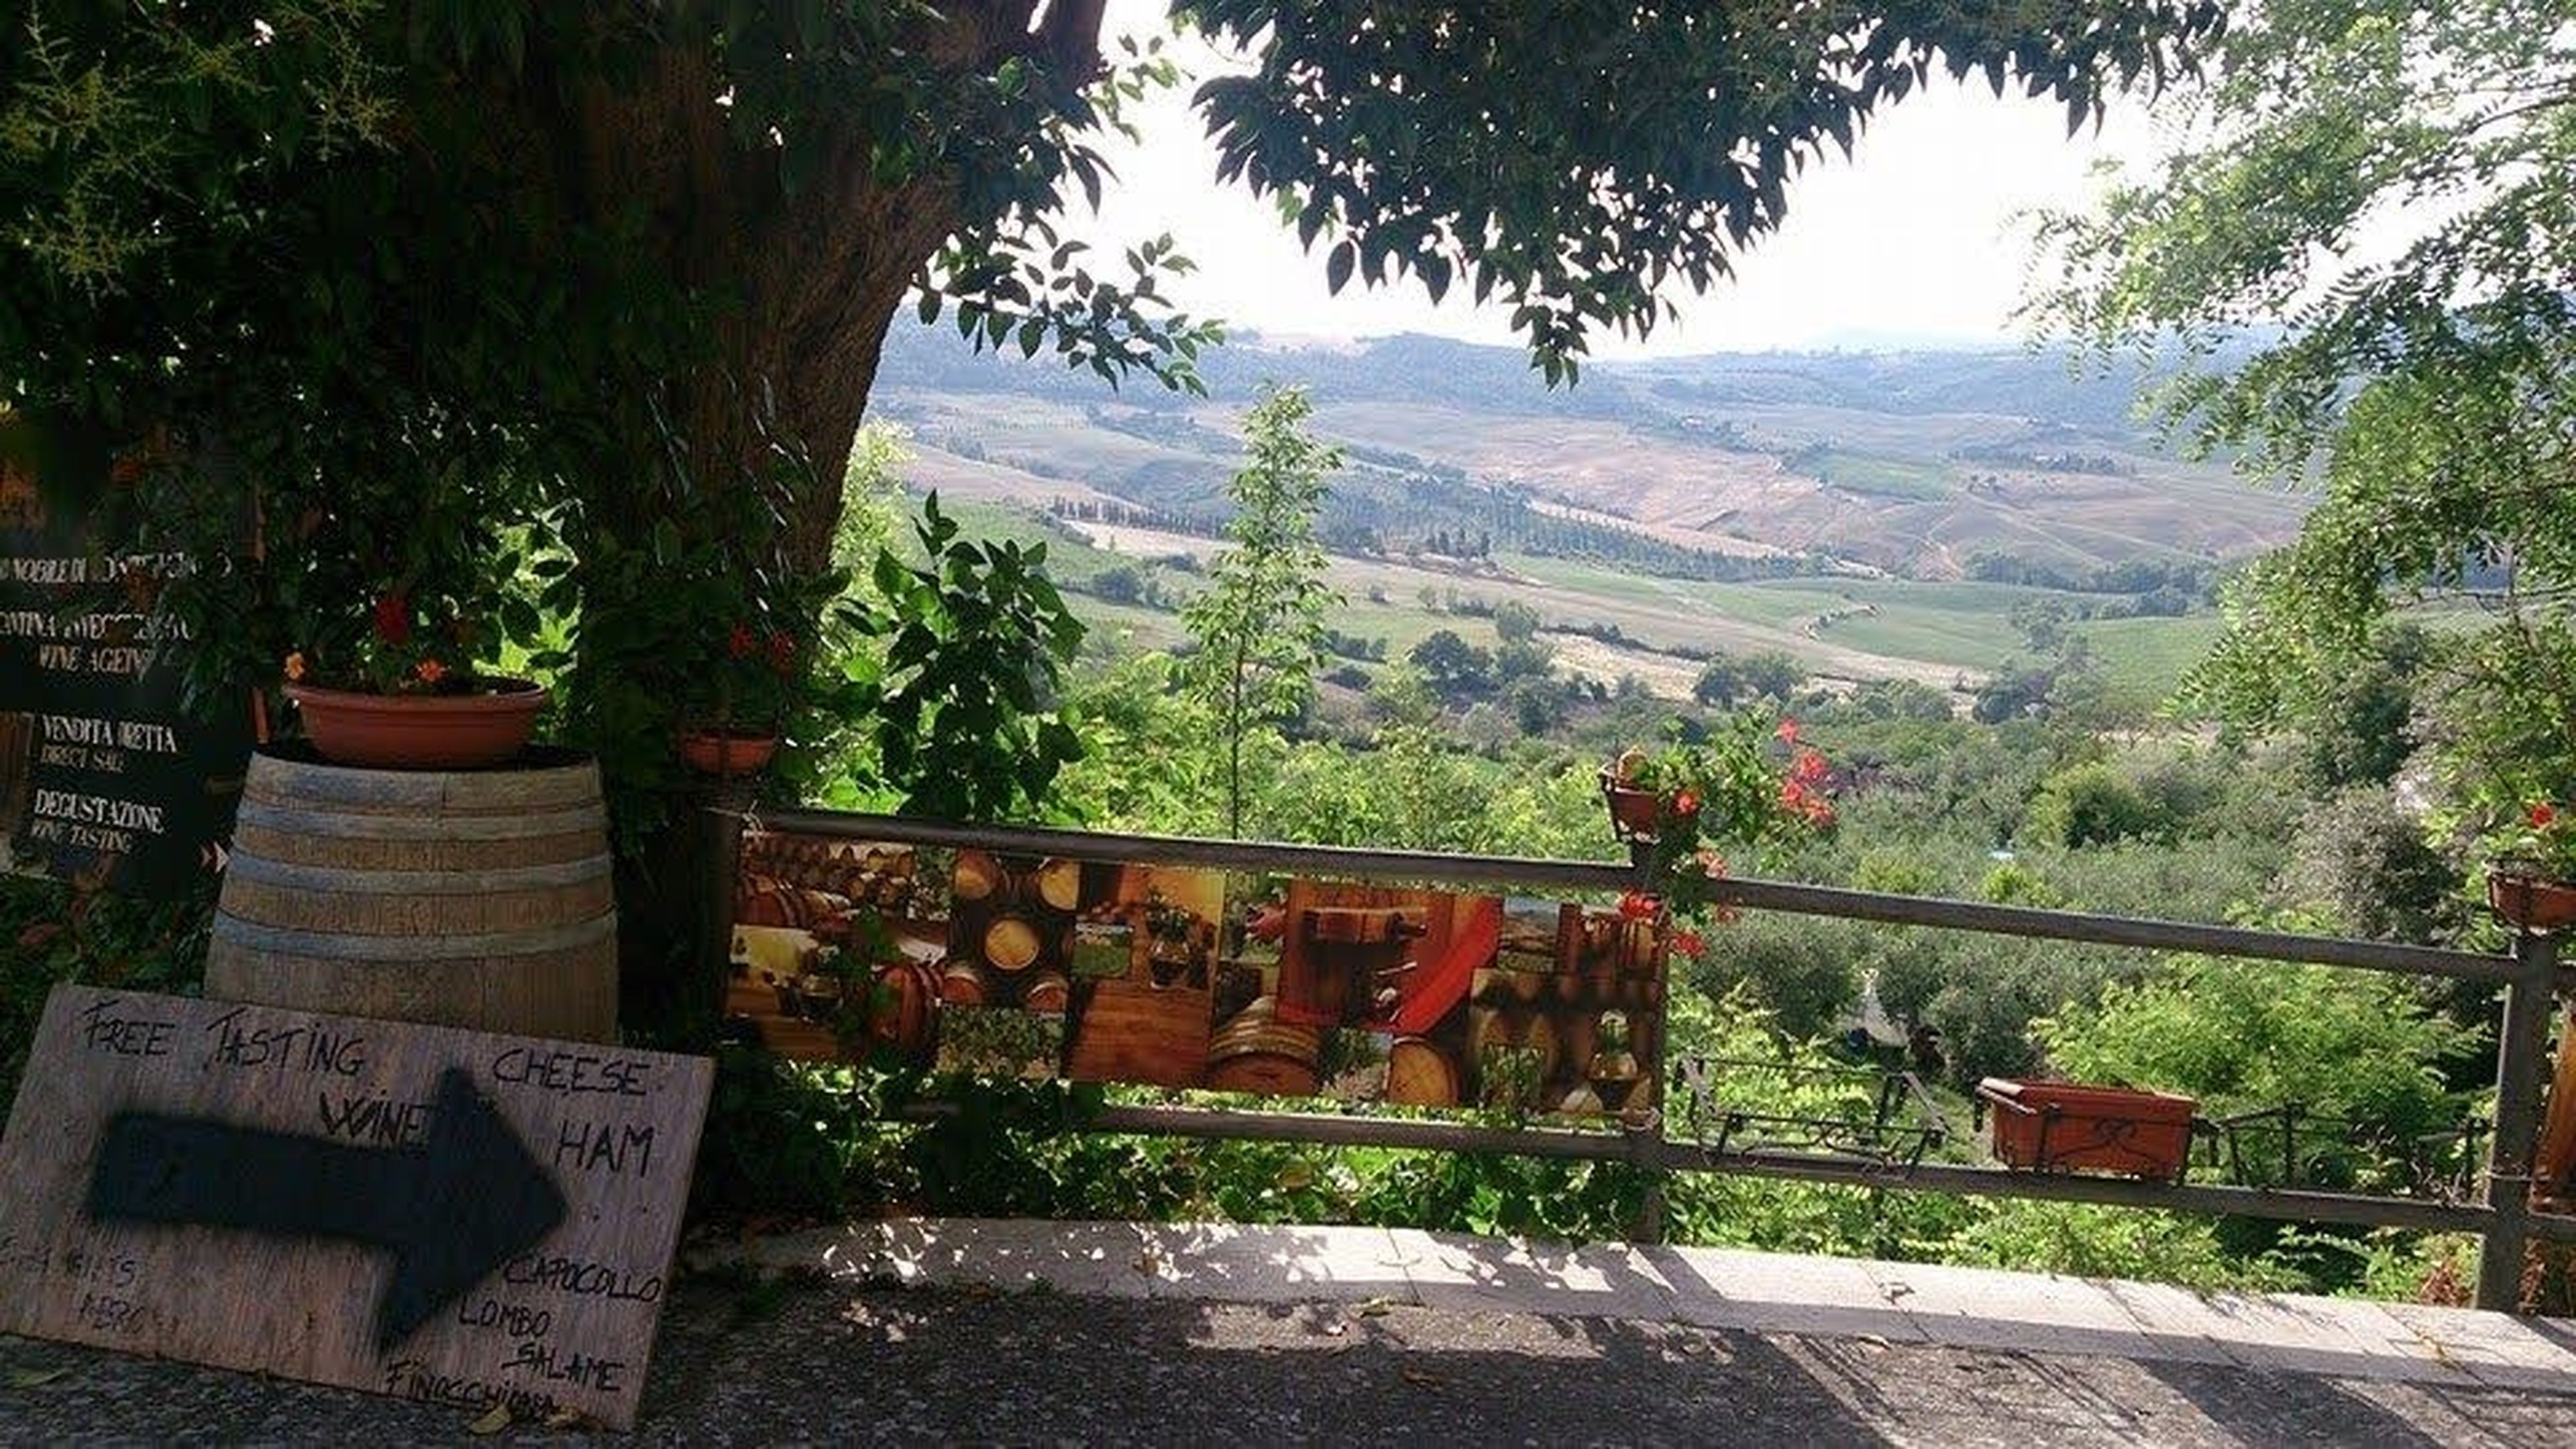 Paisaje típico de Toscana con una vinoteca cercana